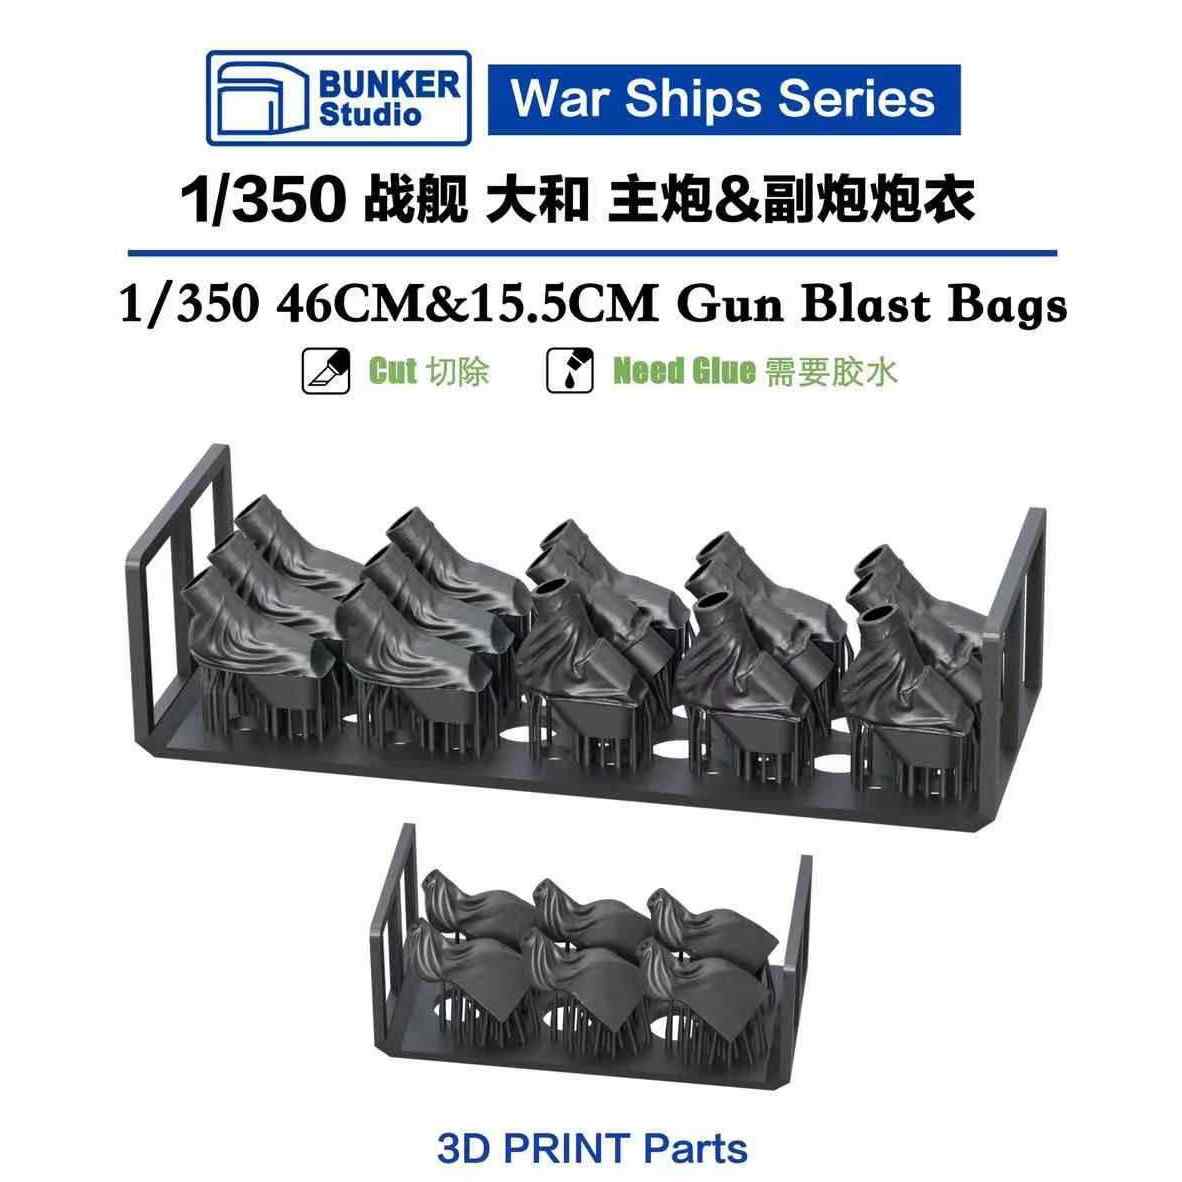 【新製品】IJN35104 日本海軍 戦艦 大和用 46cm主砲 & 15.5cm副砲用防水キャンバスセット